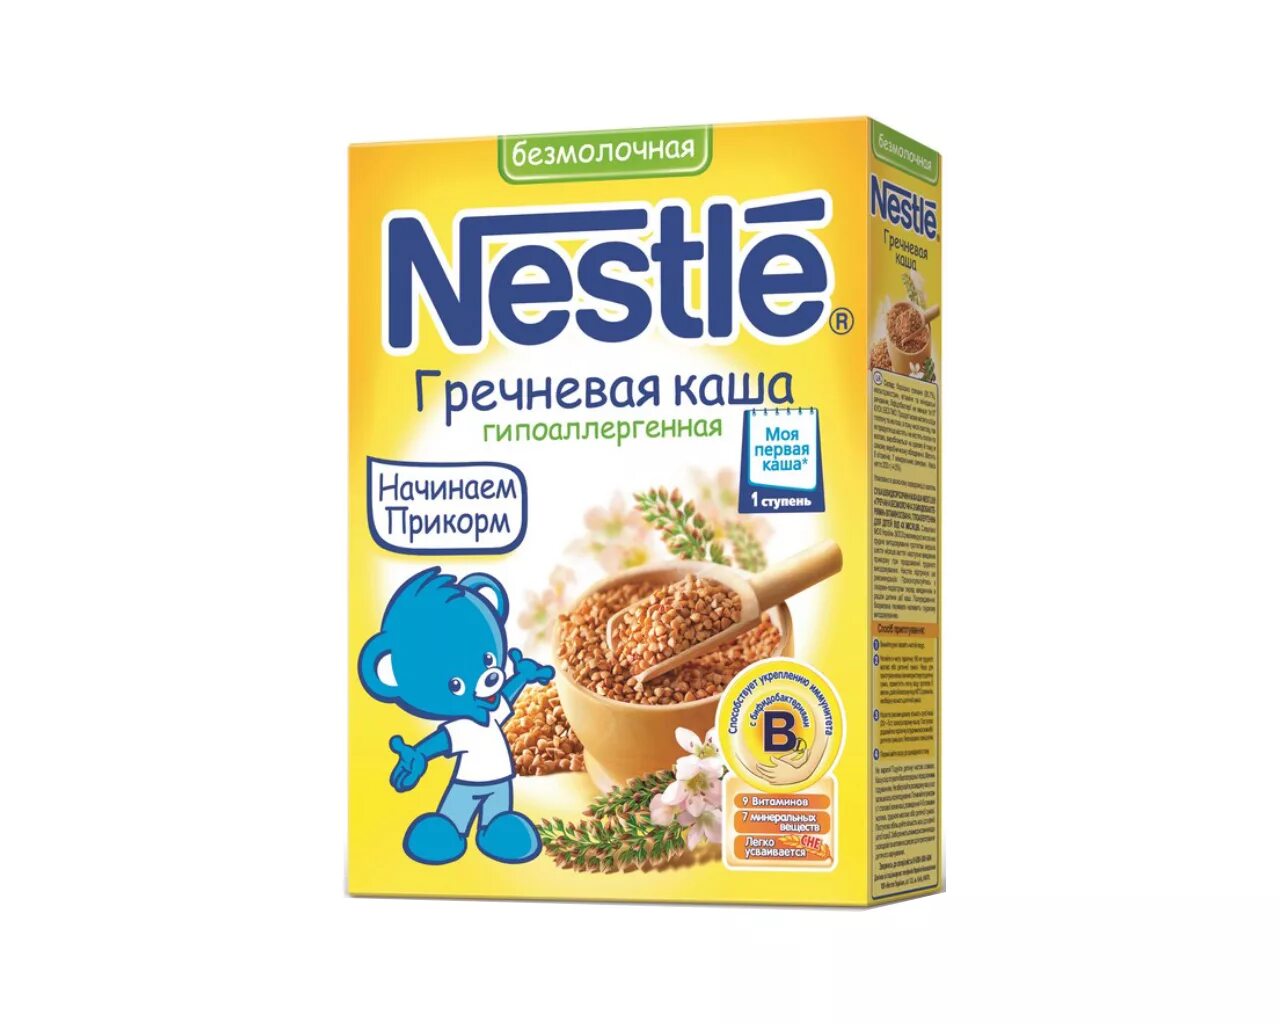 Кашки для детей. Каша Нестле безмолочная гречневая. Каши Nestle для первого прикорма. Каша Нестле для первого прикорма гречневая безмолочная. Kaşa Nestle 4 +.